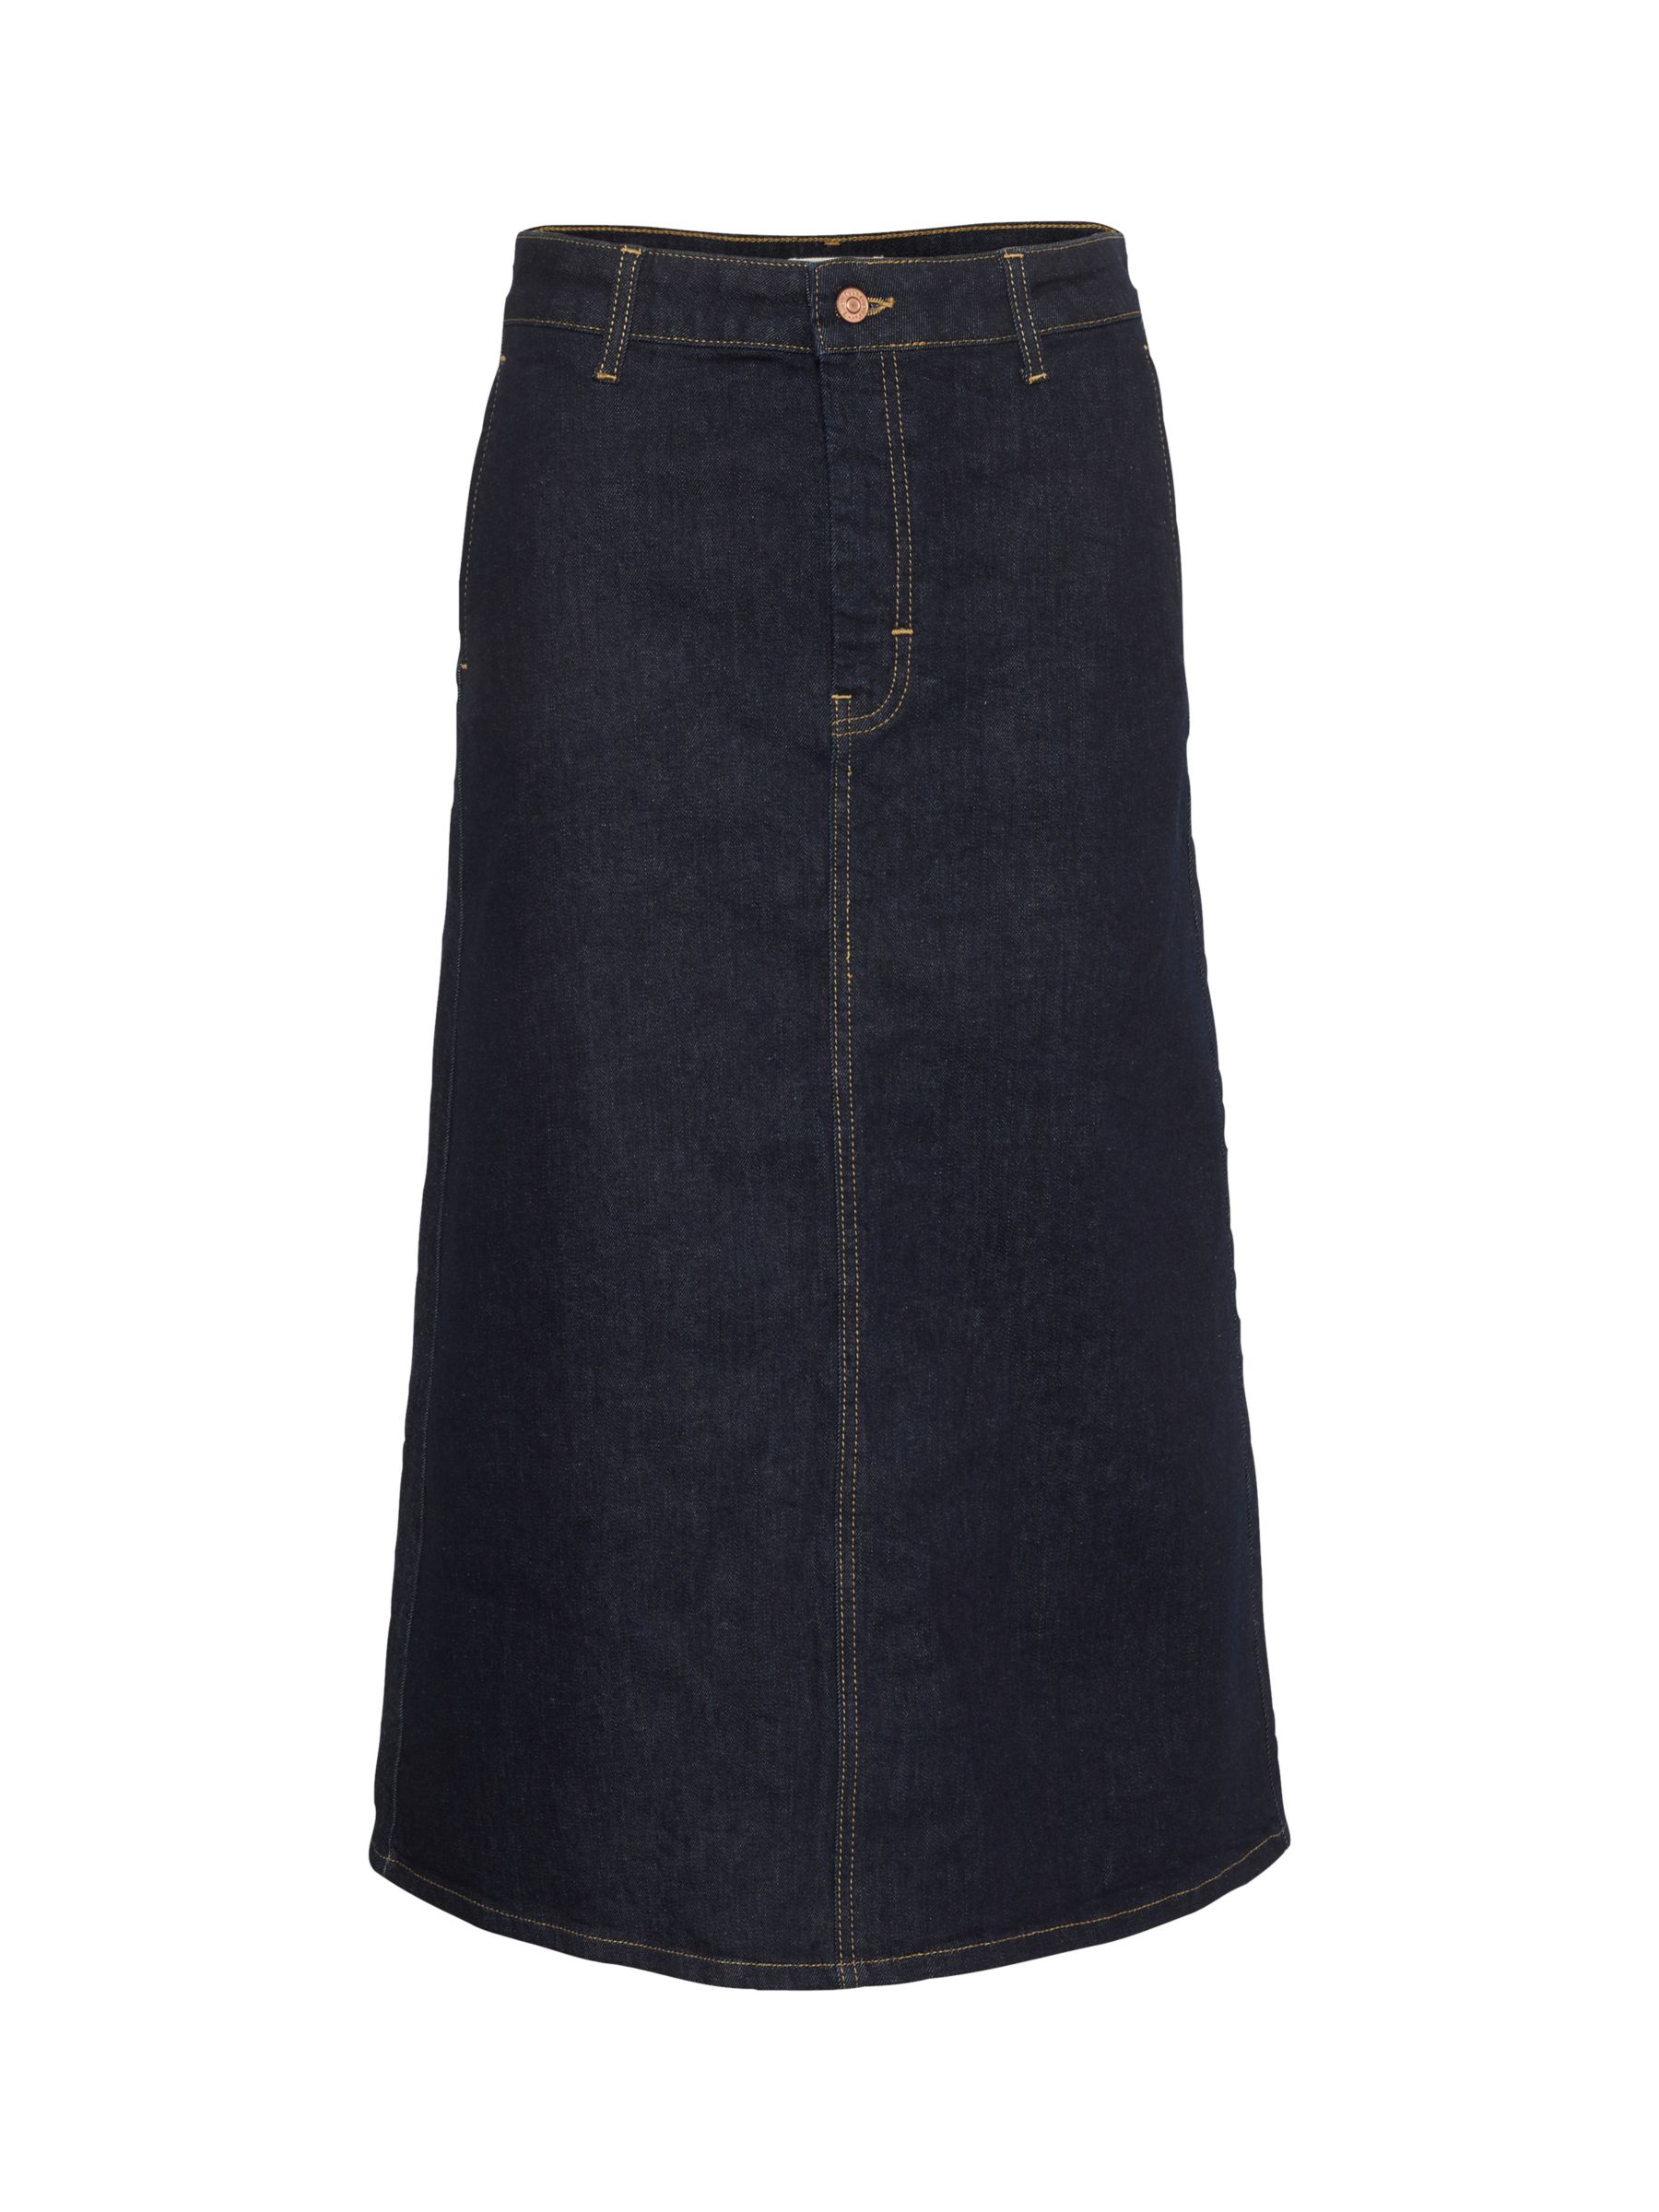 Buy Part Two Frigge A-Line Denim Skirt, Dark Blue Online at johnlewis.com